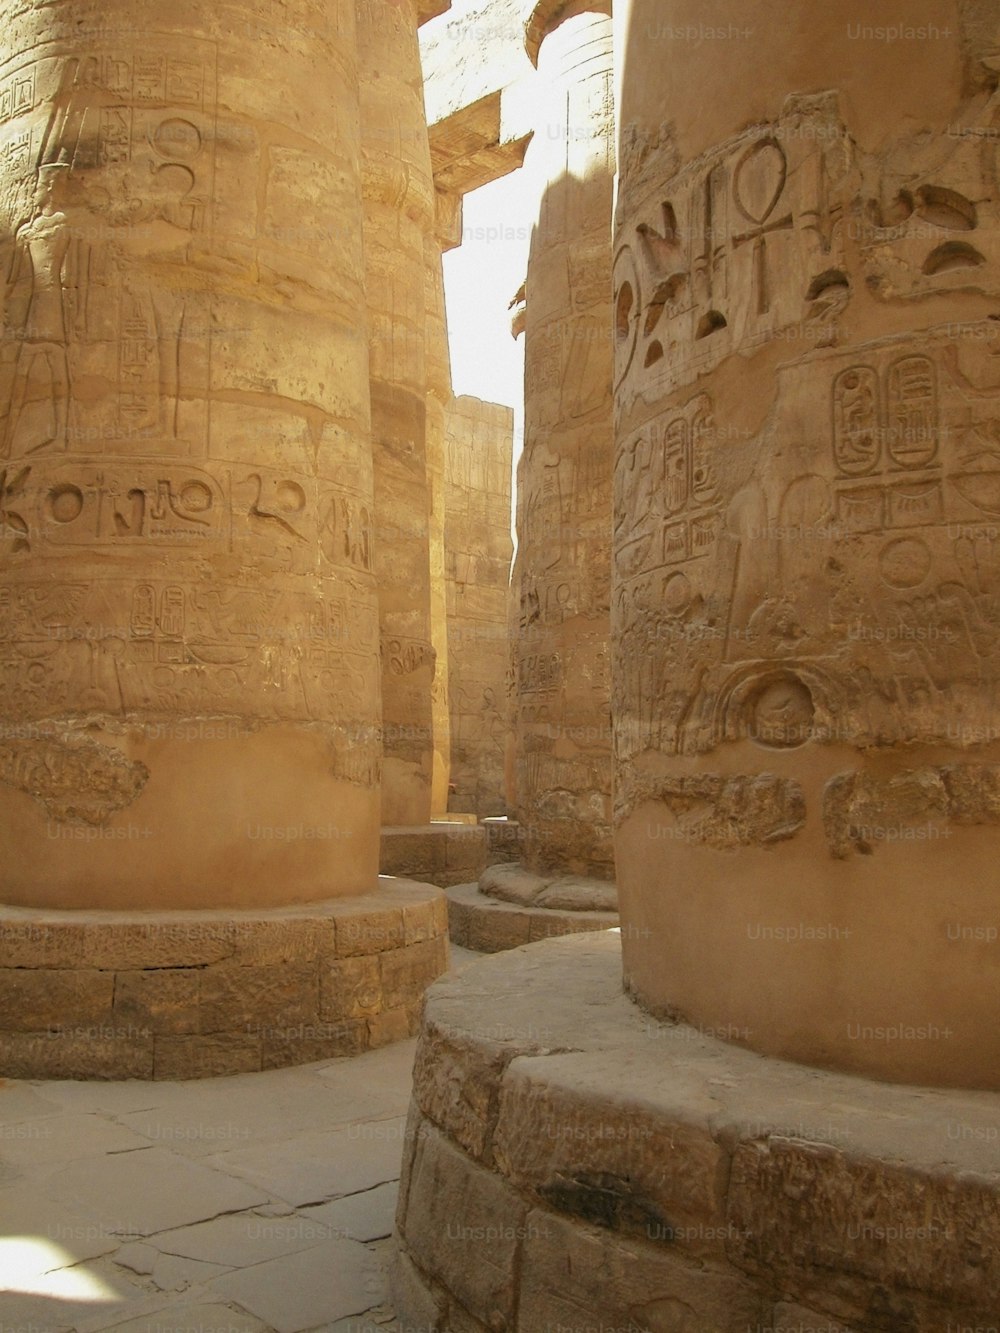 Les colonnes du temple sont sculptées avec l’écriture égyptienne ancienne